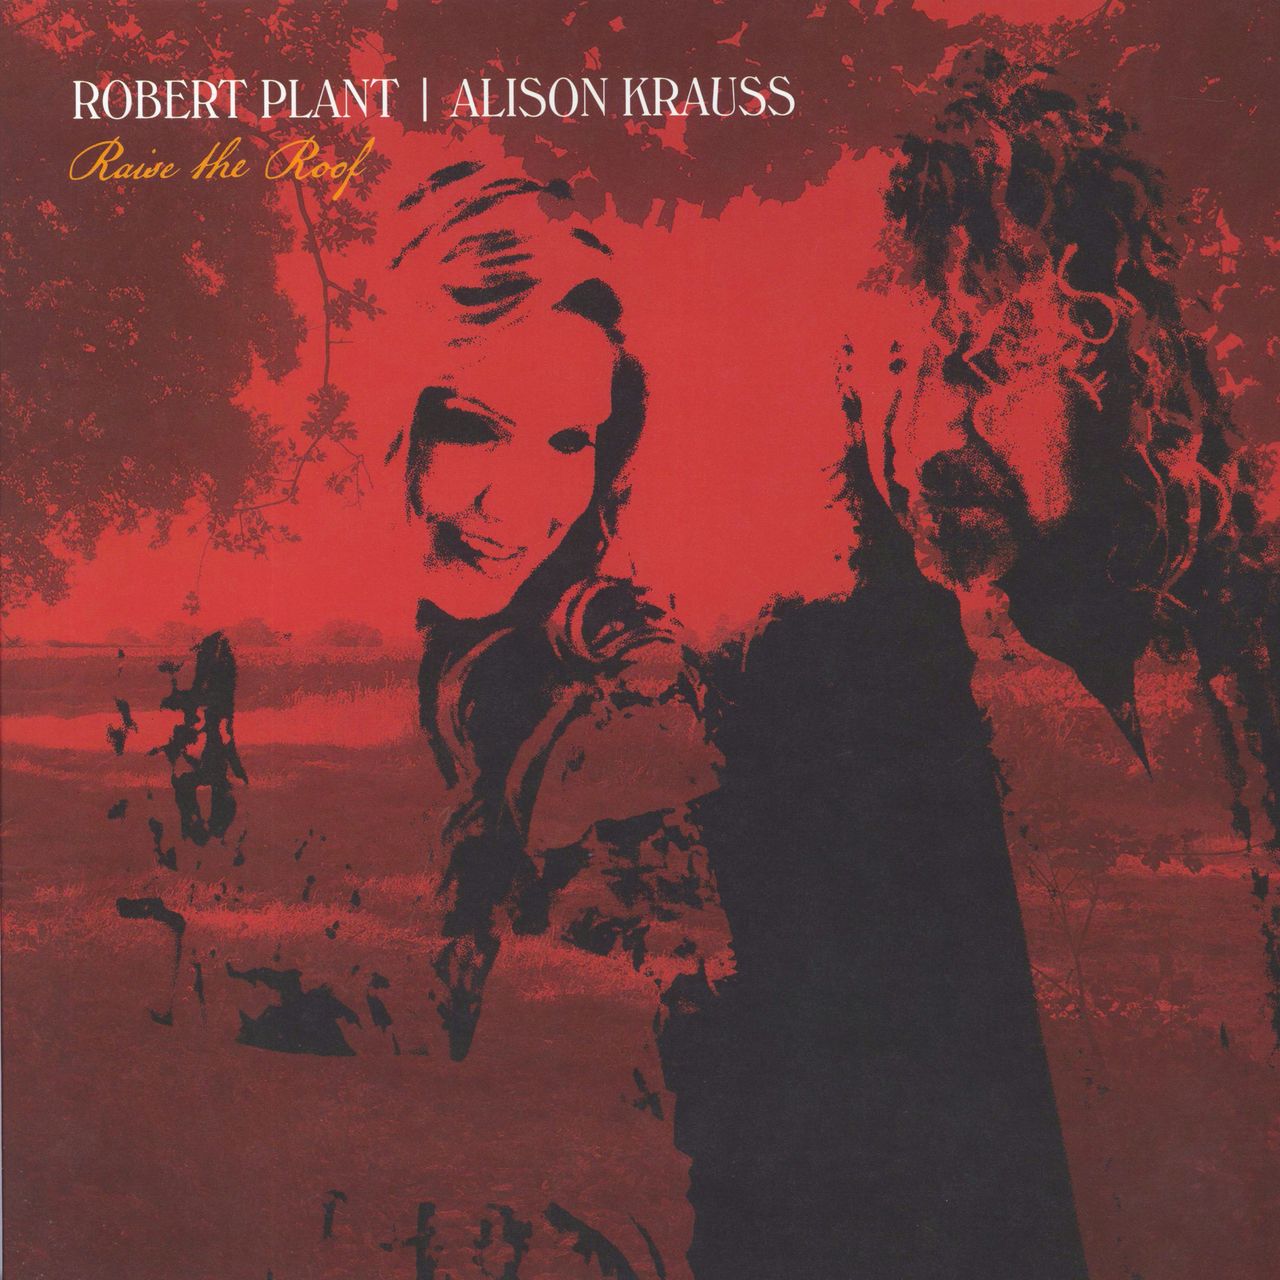 robert plant raising album covers